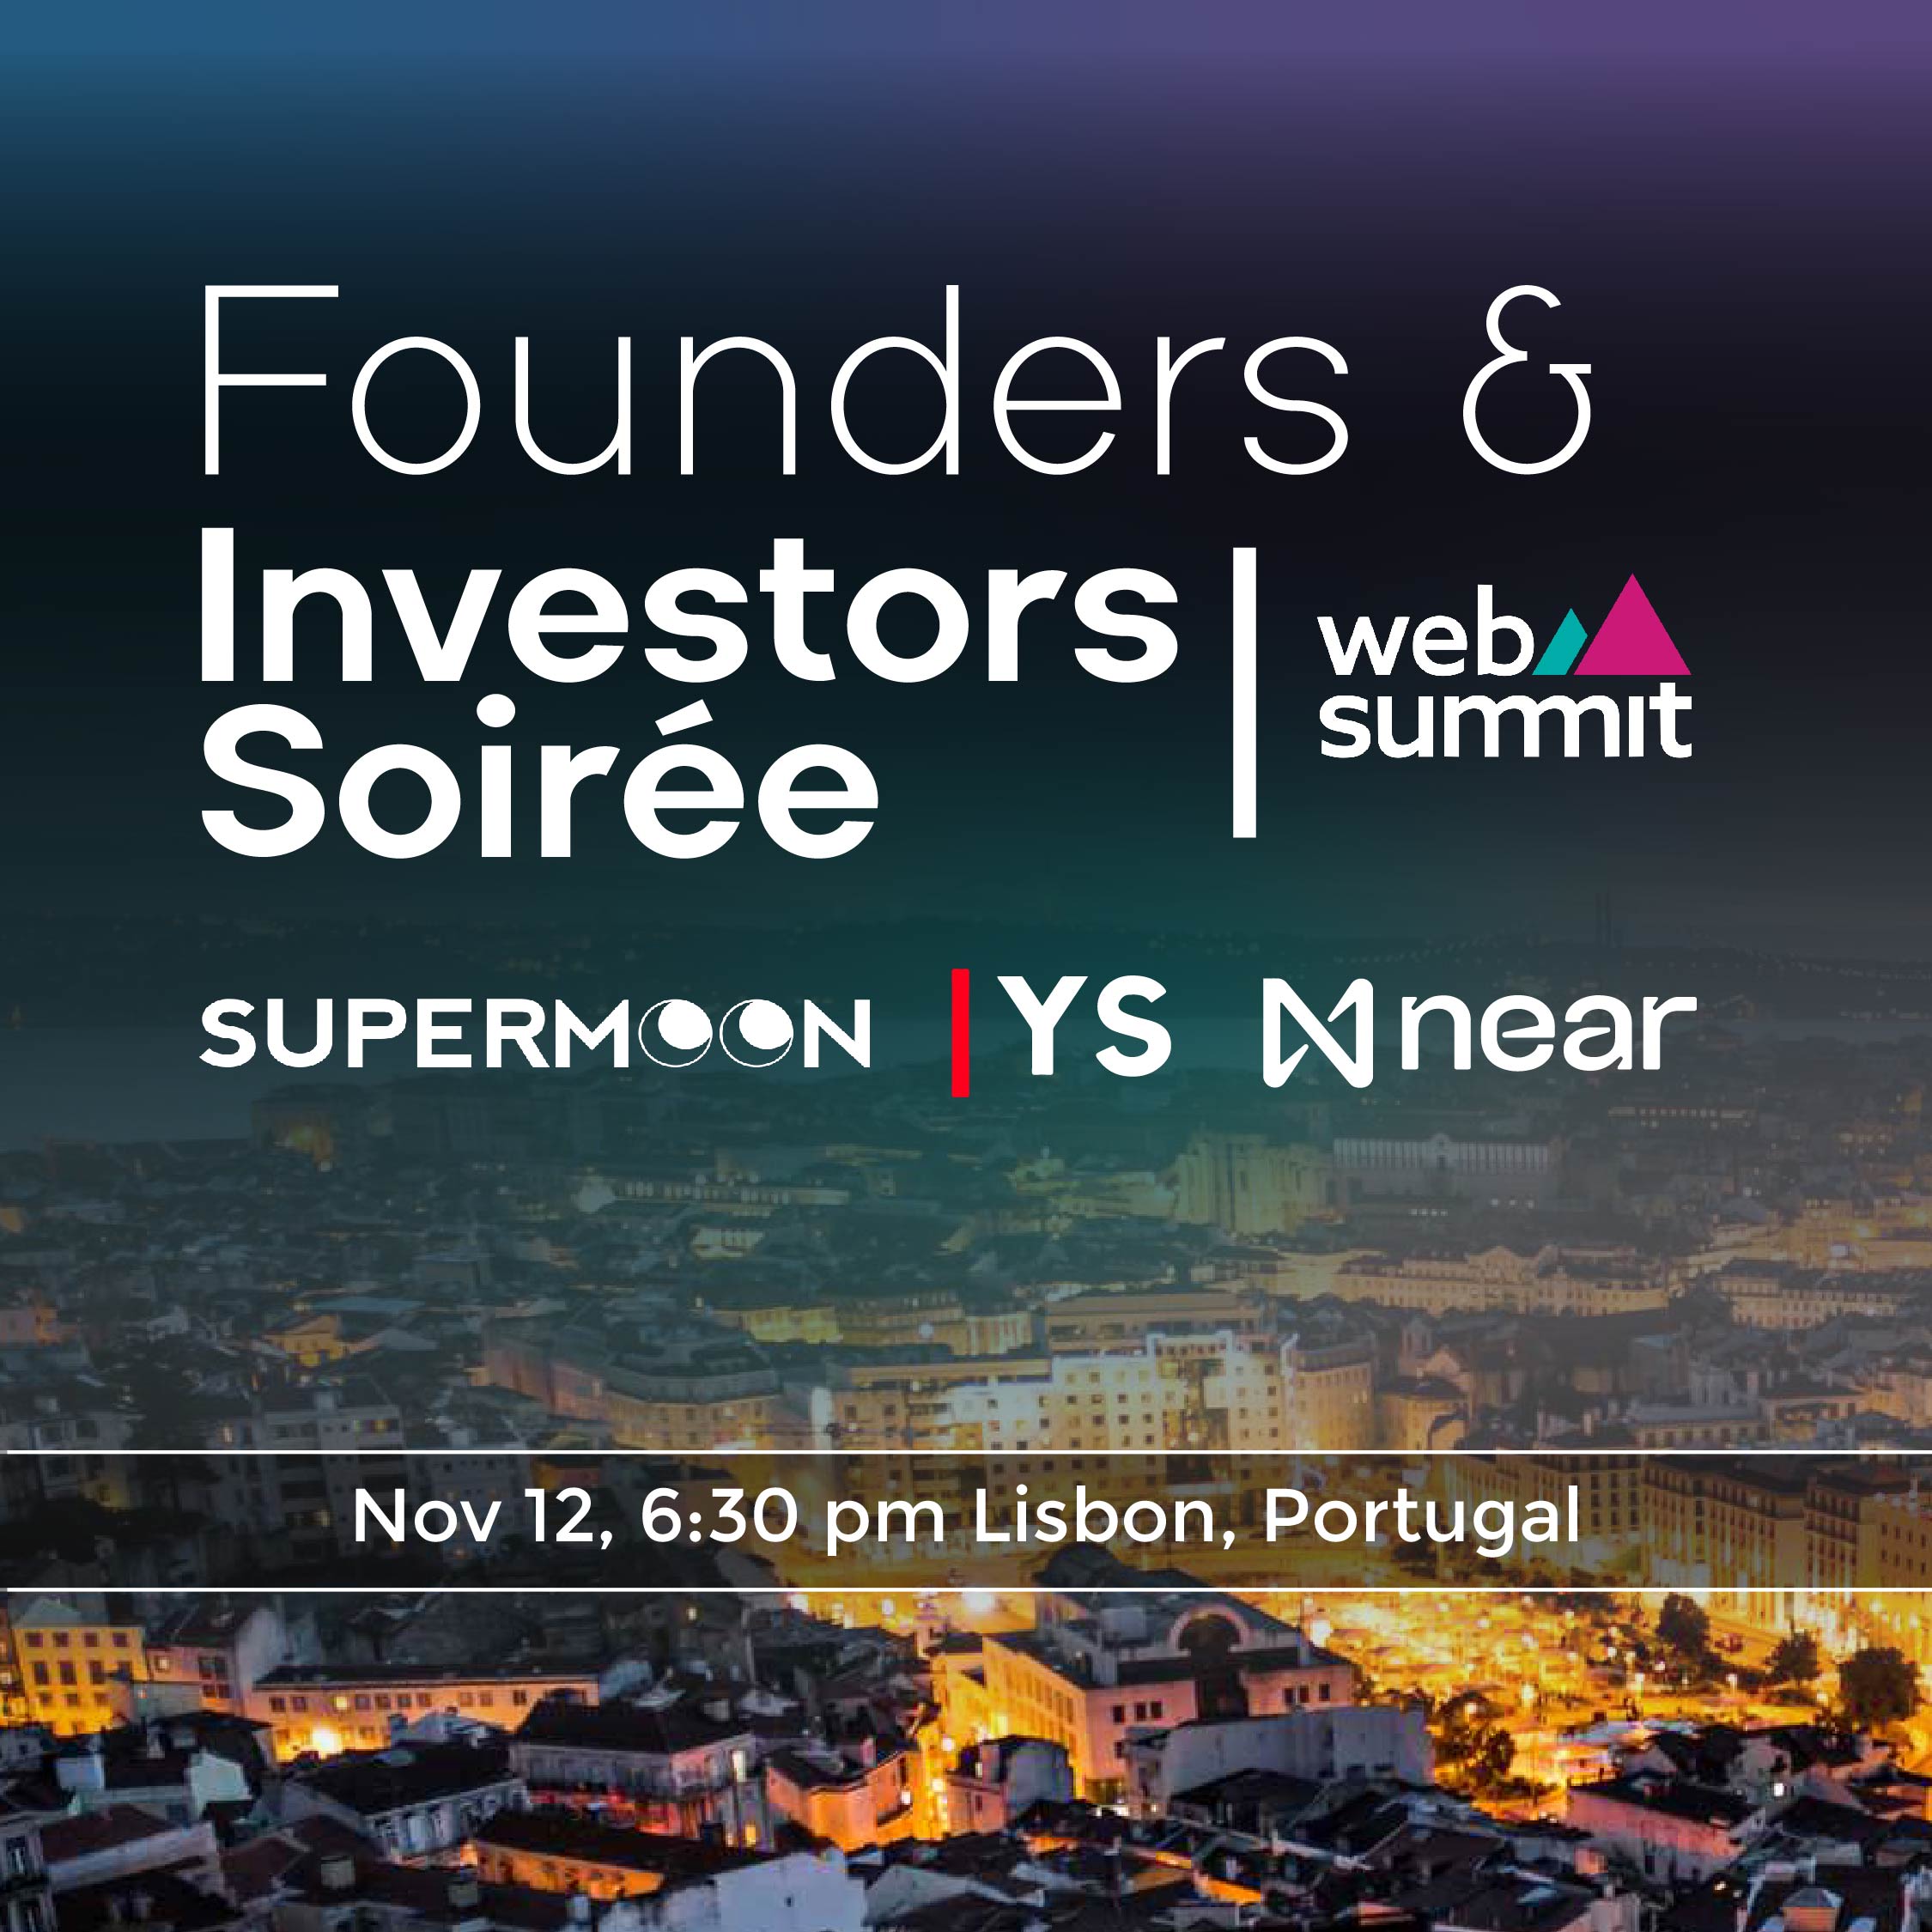 Founders & Investors Soirée @ WebSummit | Yorkseed & Su